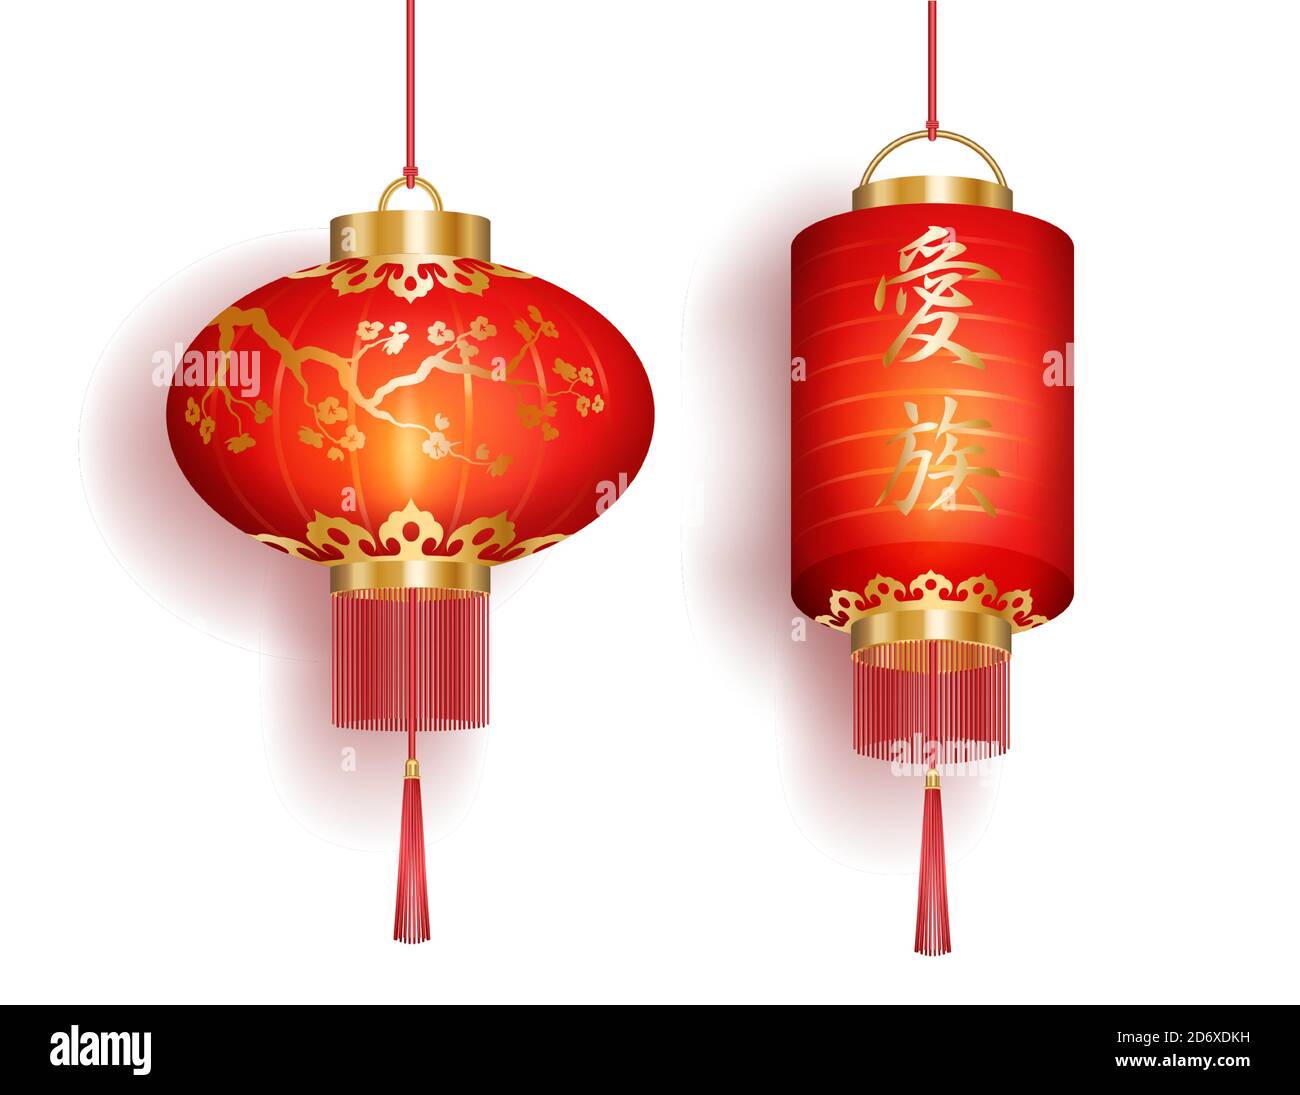 Satz von roten chinesischen Laternen kreisförmigen und zylindrischen Form, Vektor-Illustration Stock Vektor